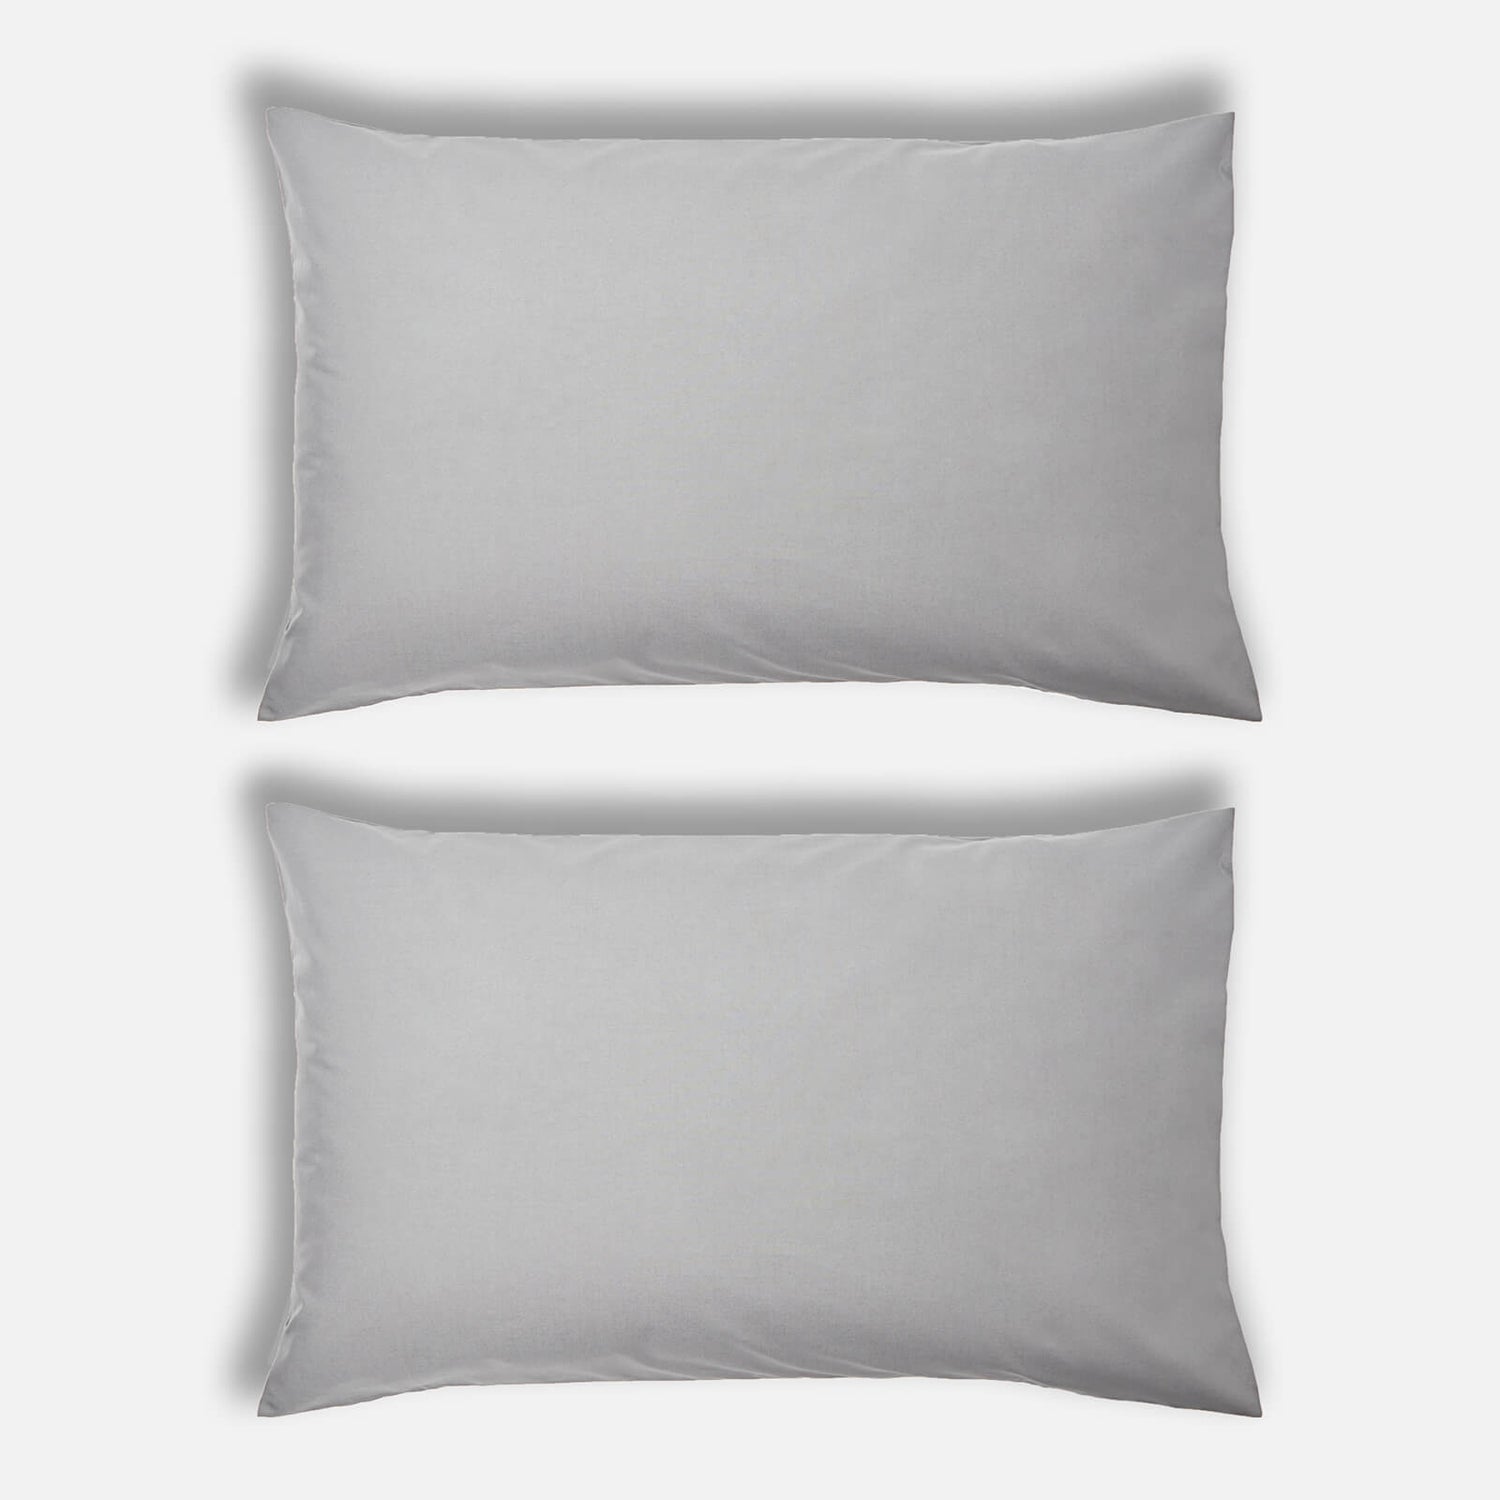 ïn home 200 Thread Count 100% Organic Cotton Pillowcase Pair - Dark Grey